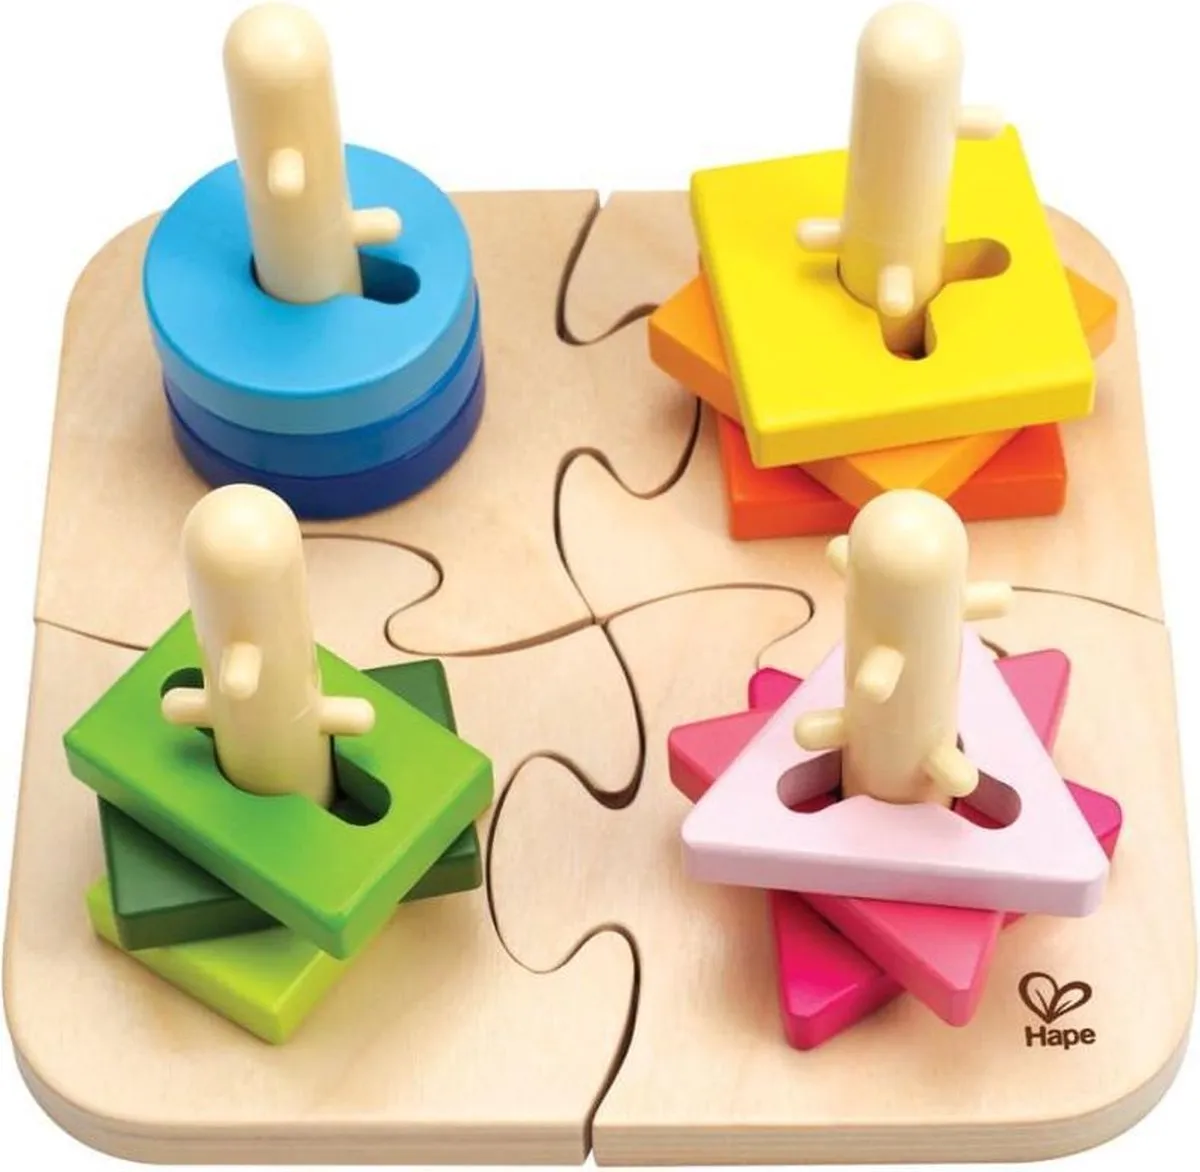 Hape Speelgoed - Vormen en kleuren puzzel - Houten puzzels speelgoed